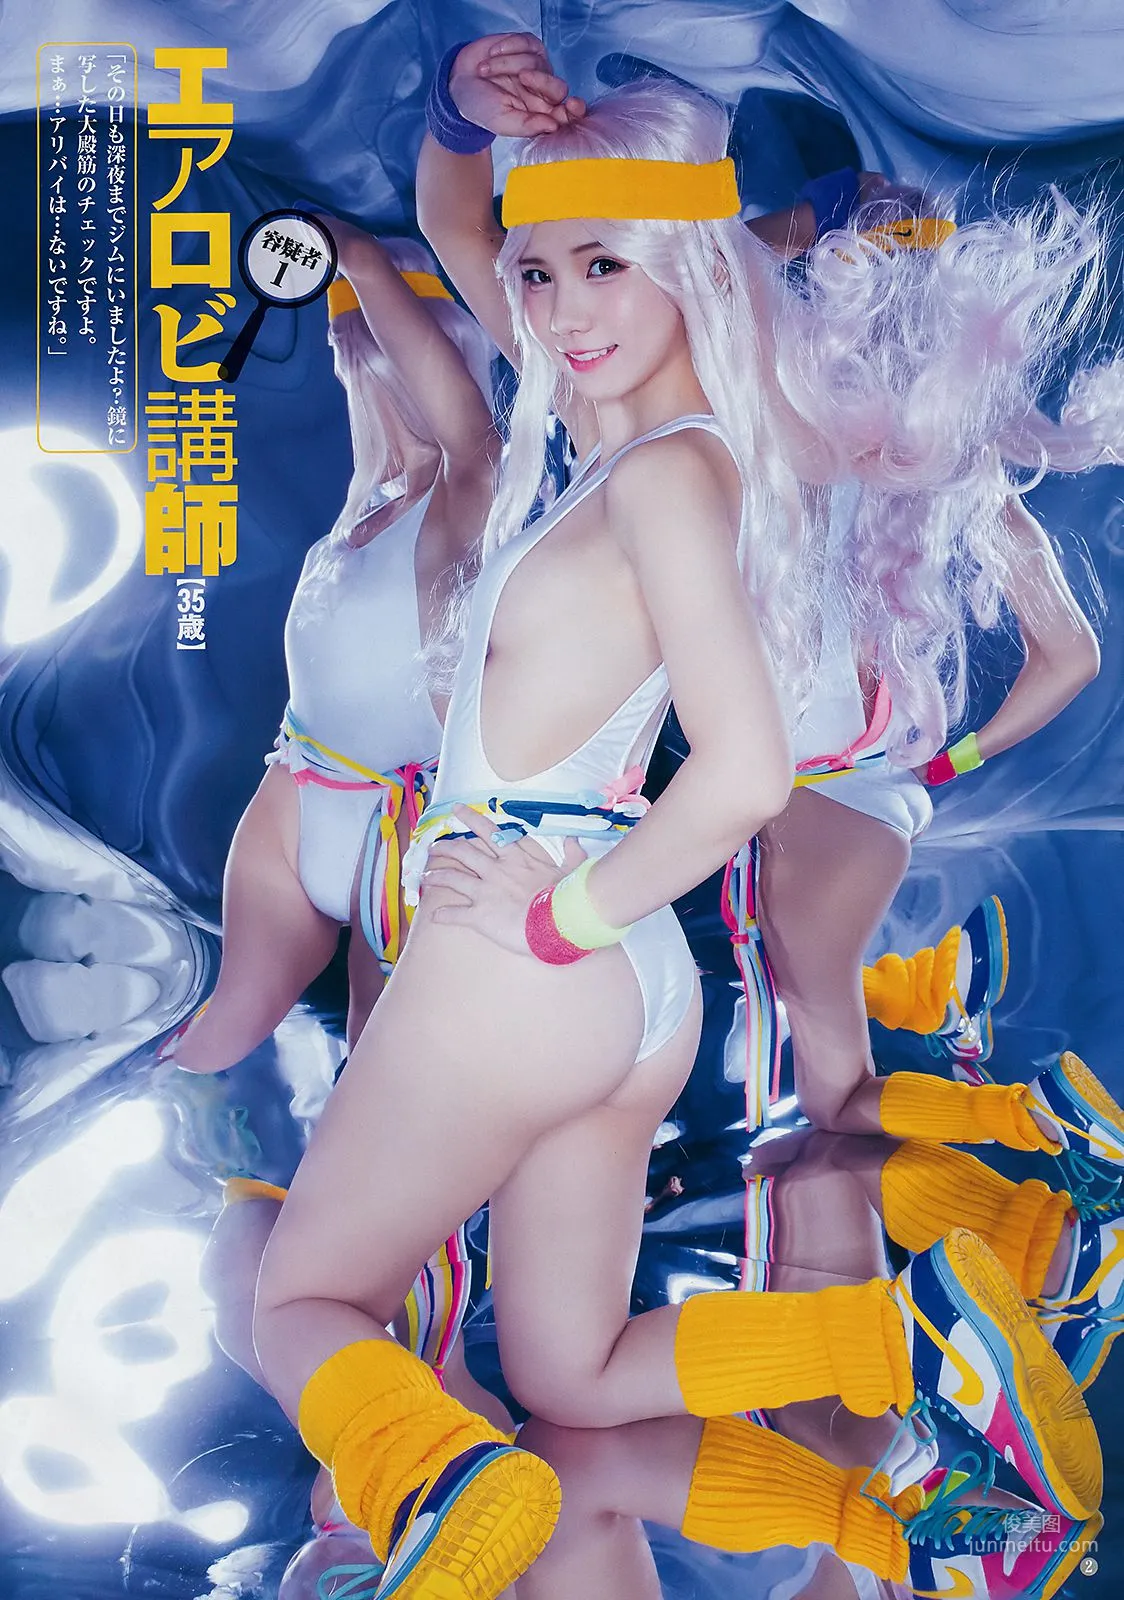 えなこ 熊澤風花 [Weekly Young Jump] 2019年No.02 写真杂志3